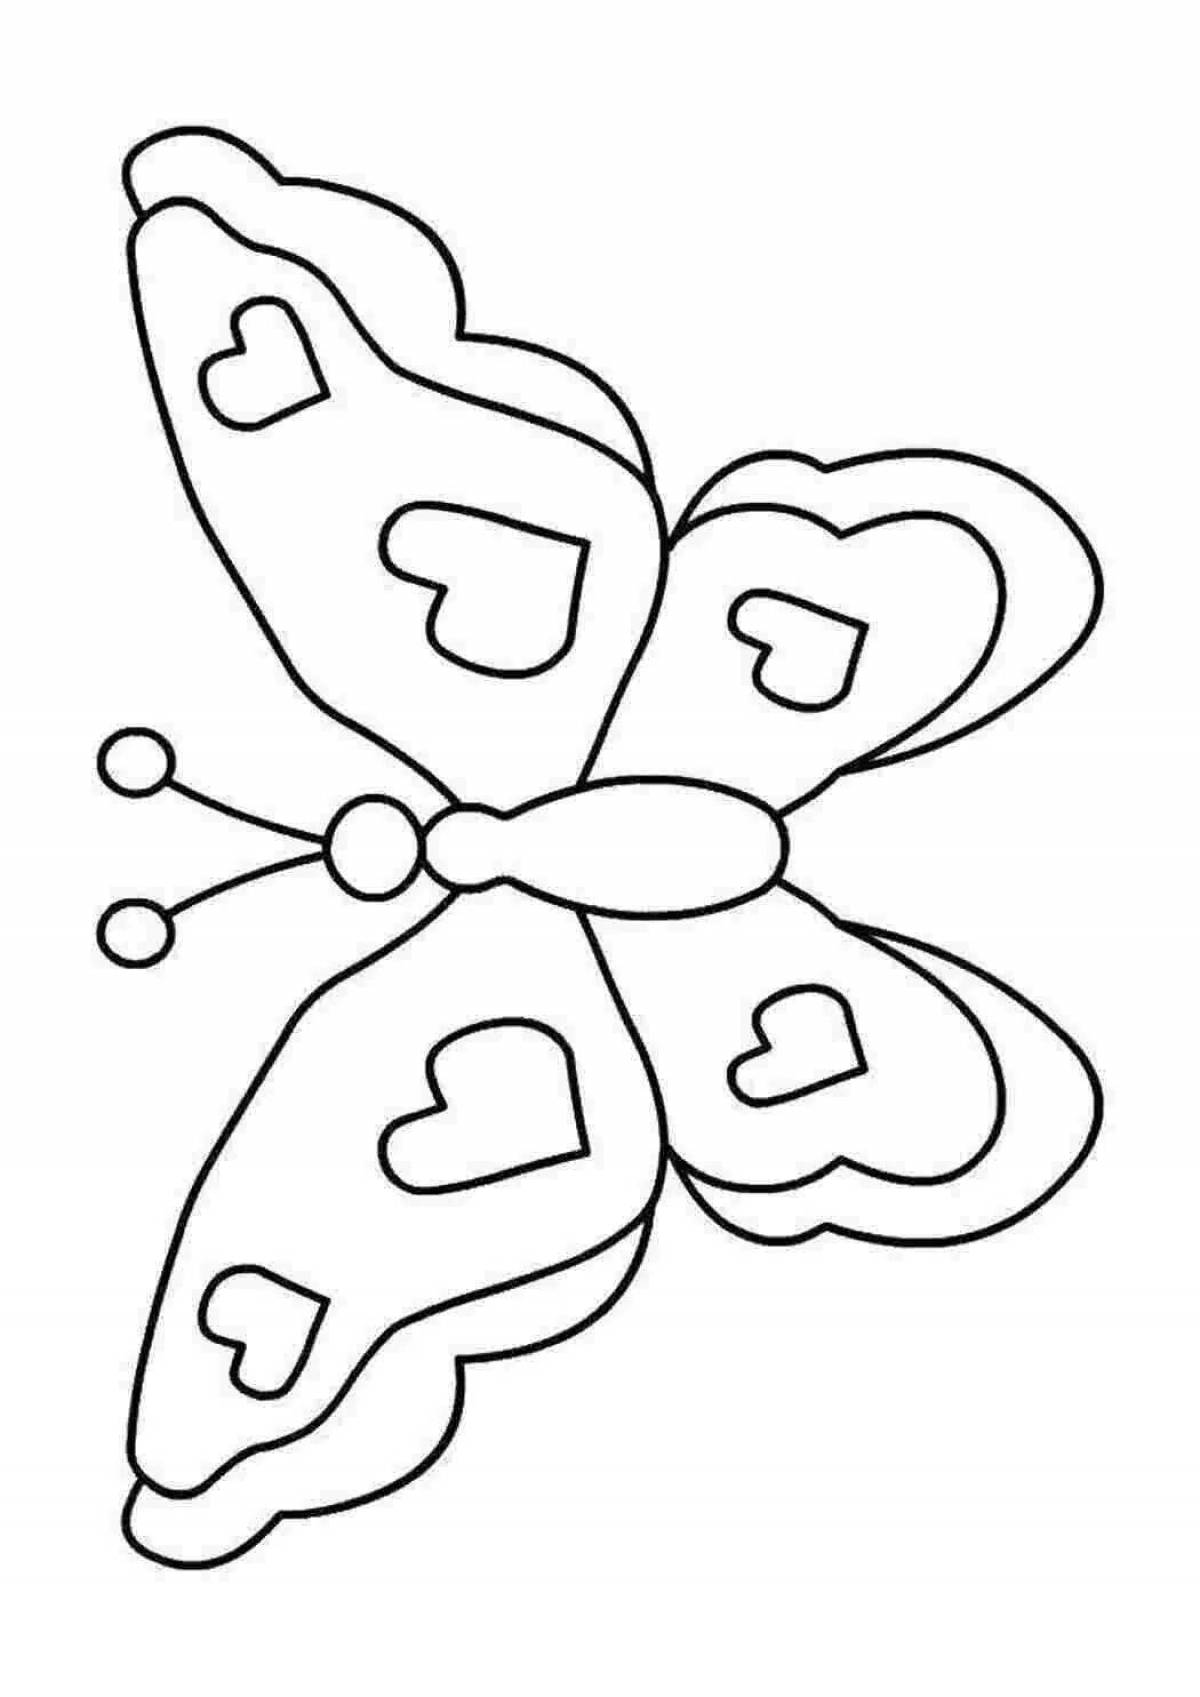 Раскраска 2 бабочки. Раскраска "бабочки". Бабочка раскраска для детей. Раскраска для малы бабочка. Бабочка для раскрашивания для детей.